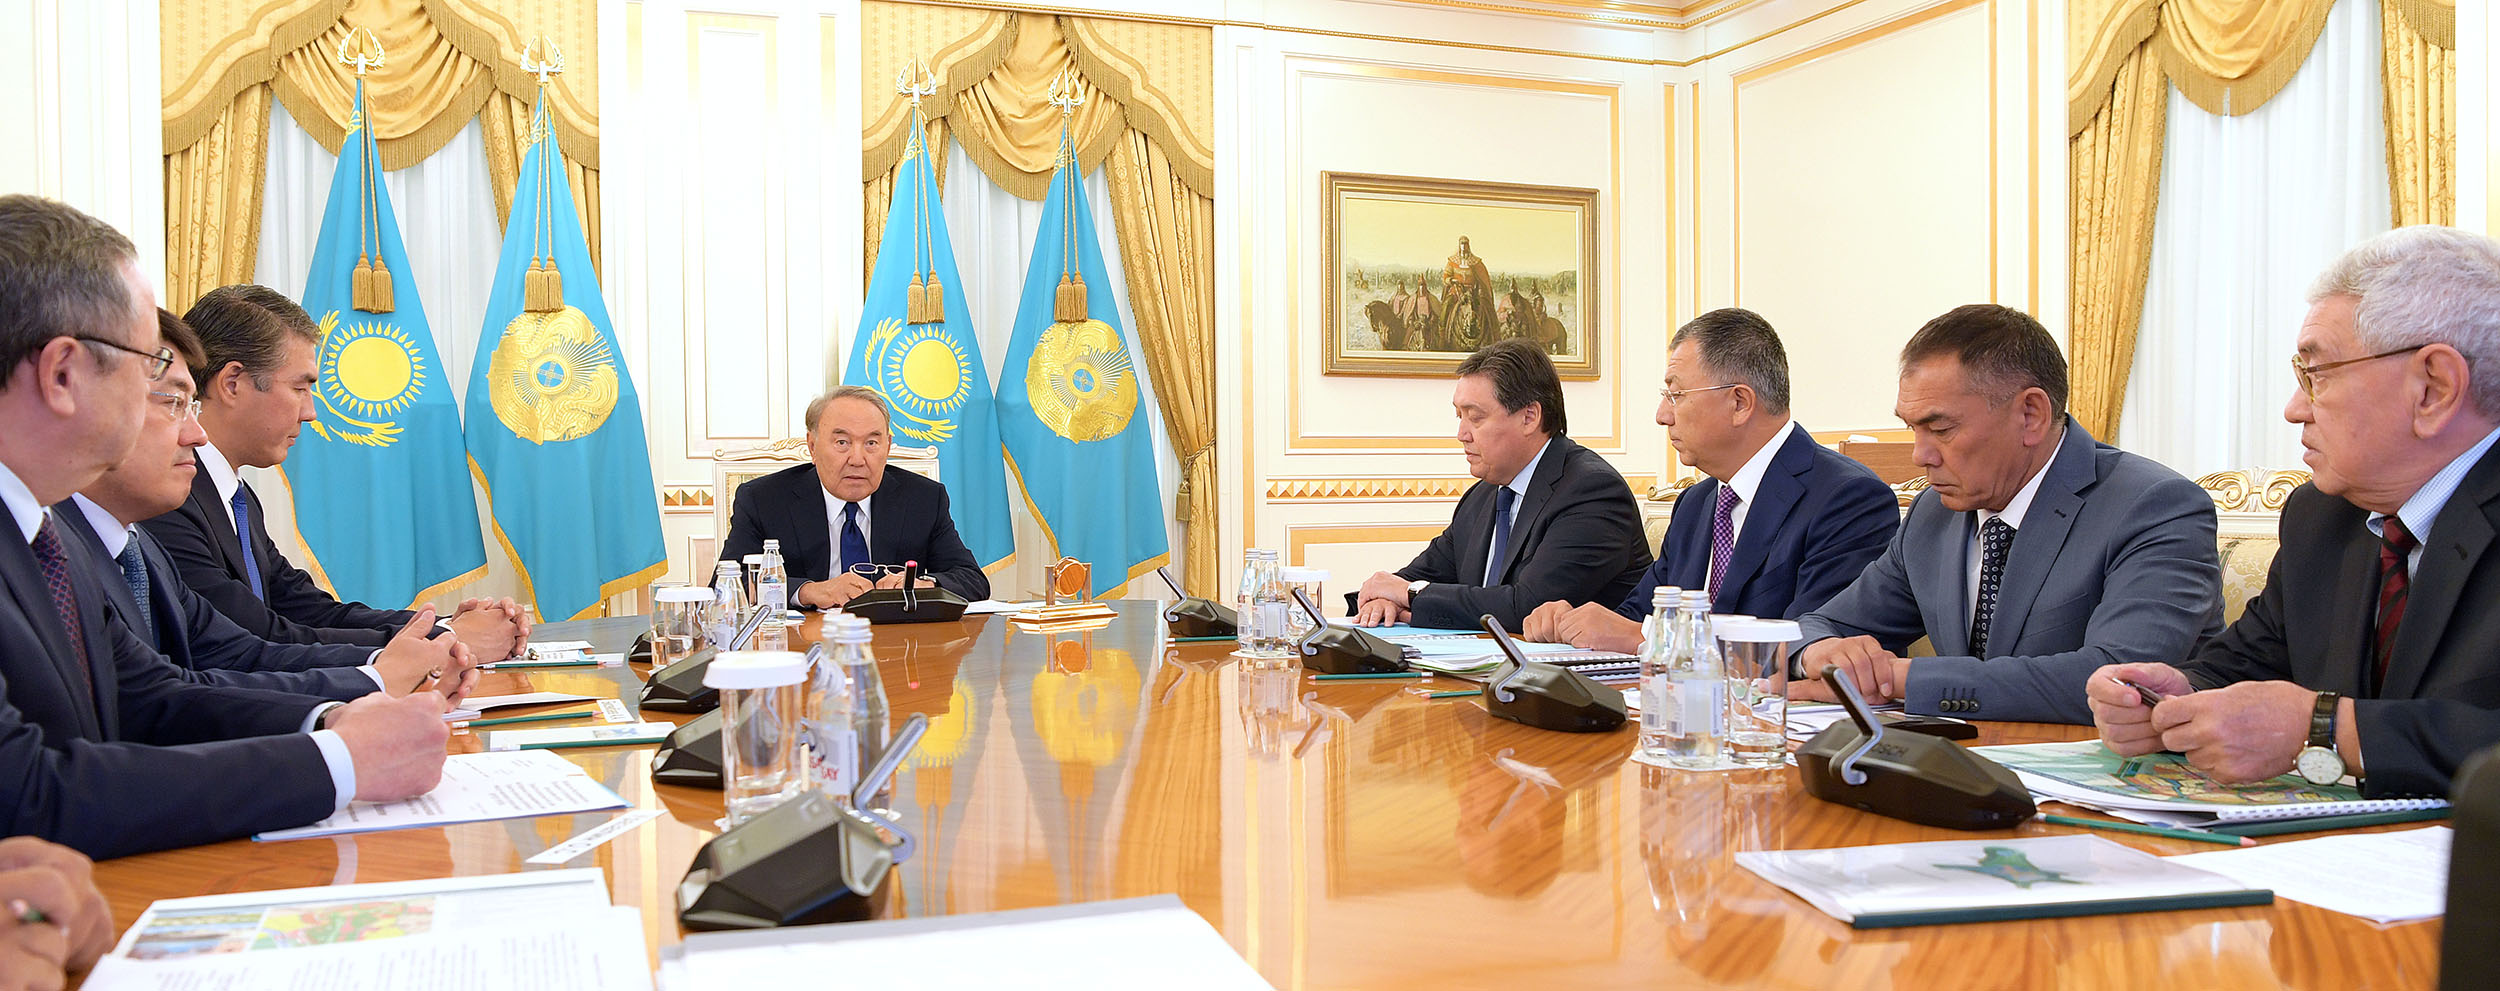 Нурсултану Назарбаеву доложили о планах развития Туркестана